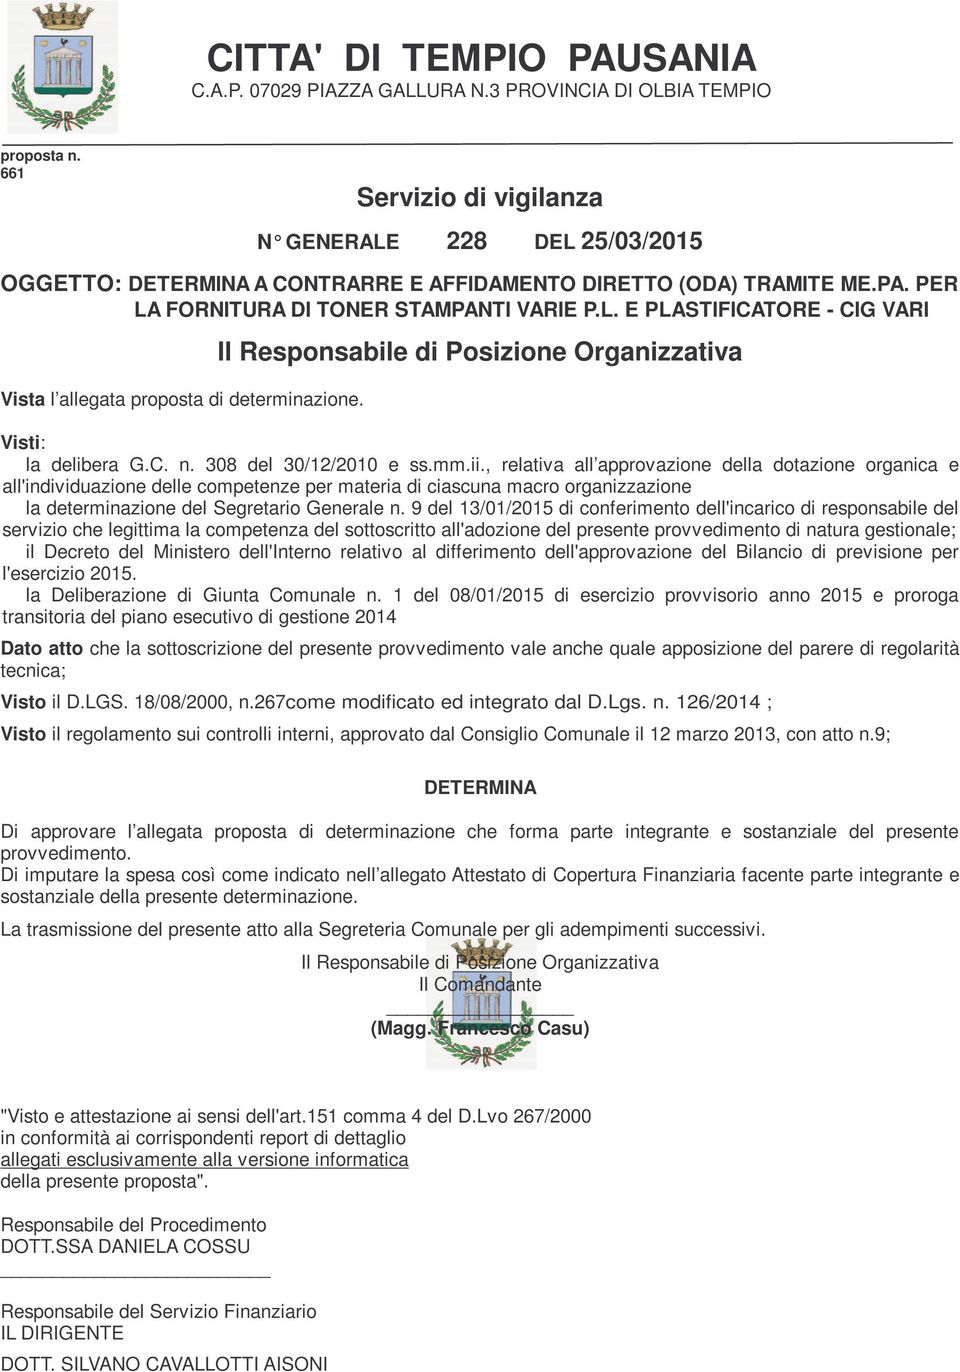 Il Responsabile di Posizione Organizzativa Visti: la delibera G.C. n. 308 del 30/12/2010 e ss.mm.ii.